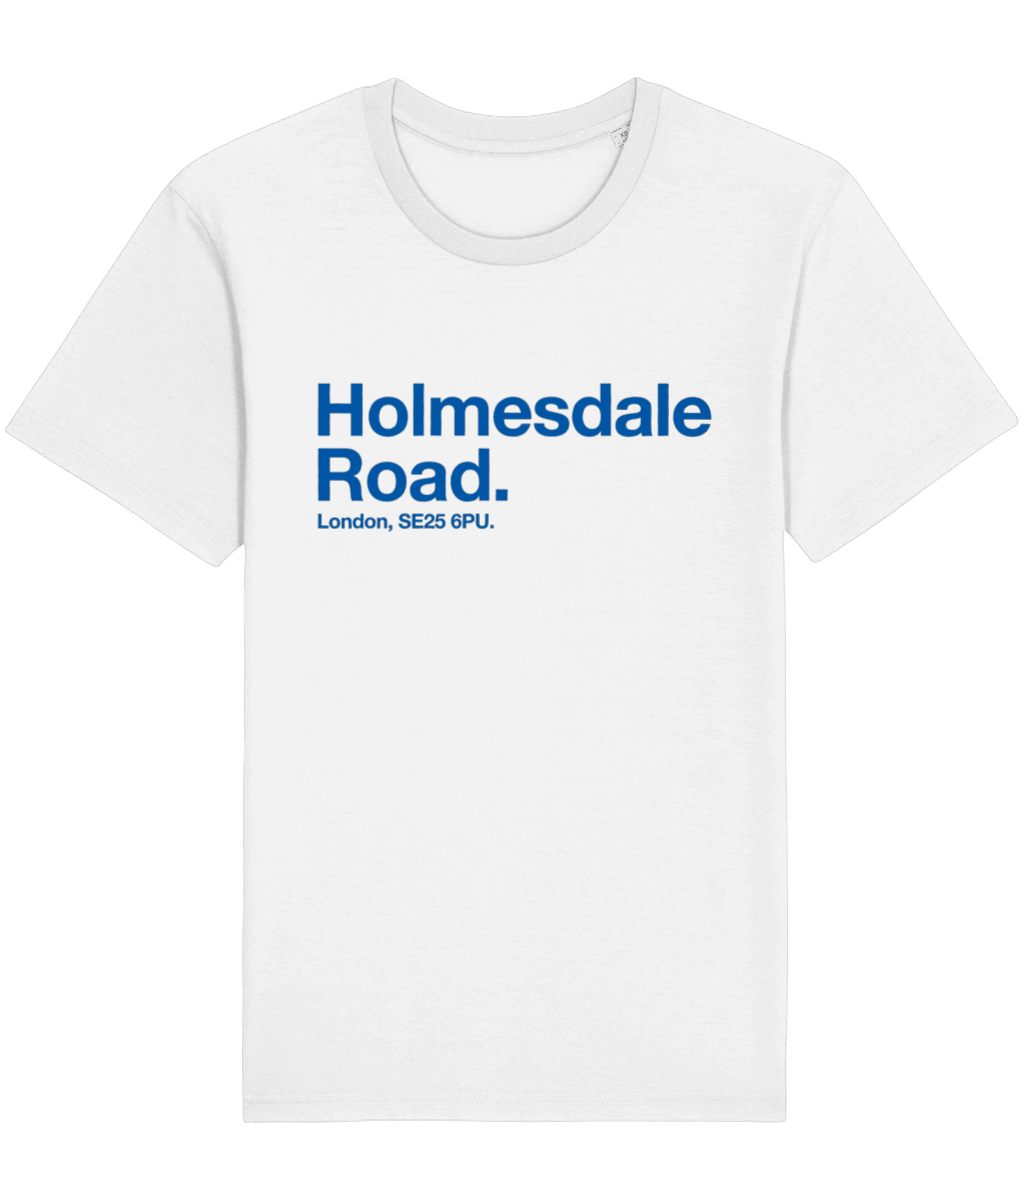 Holmesdale Road - Tee